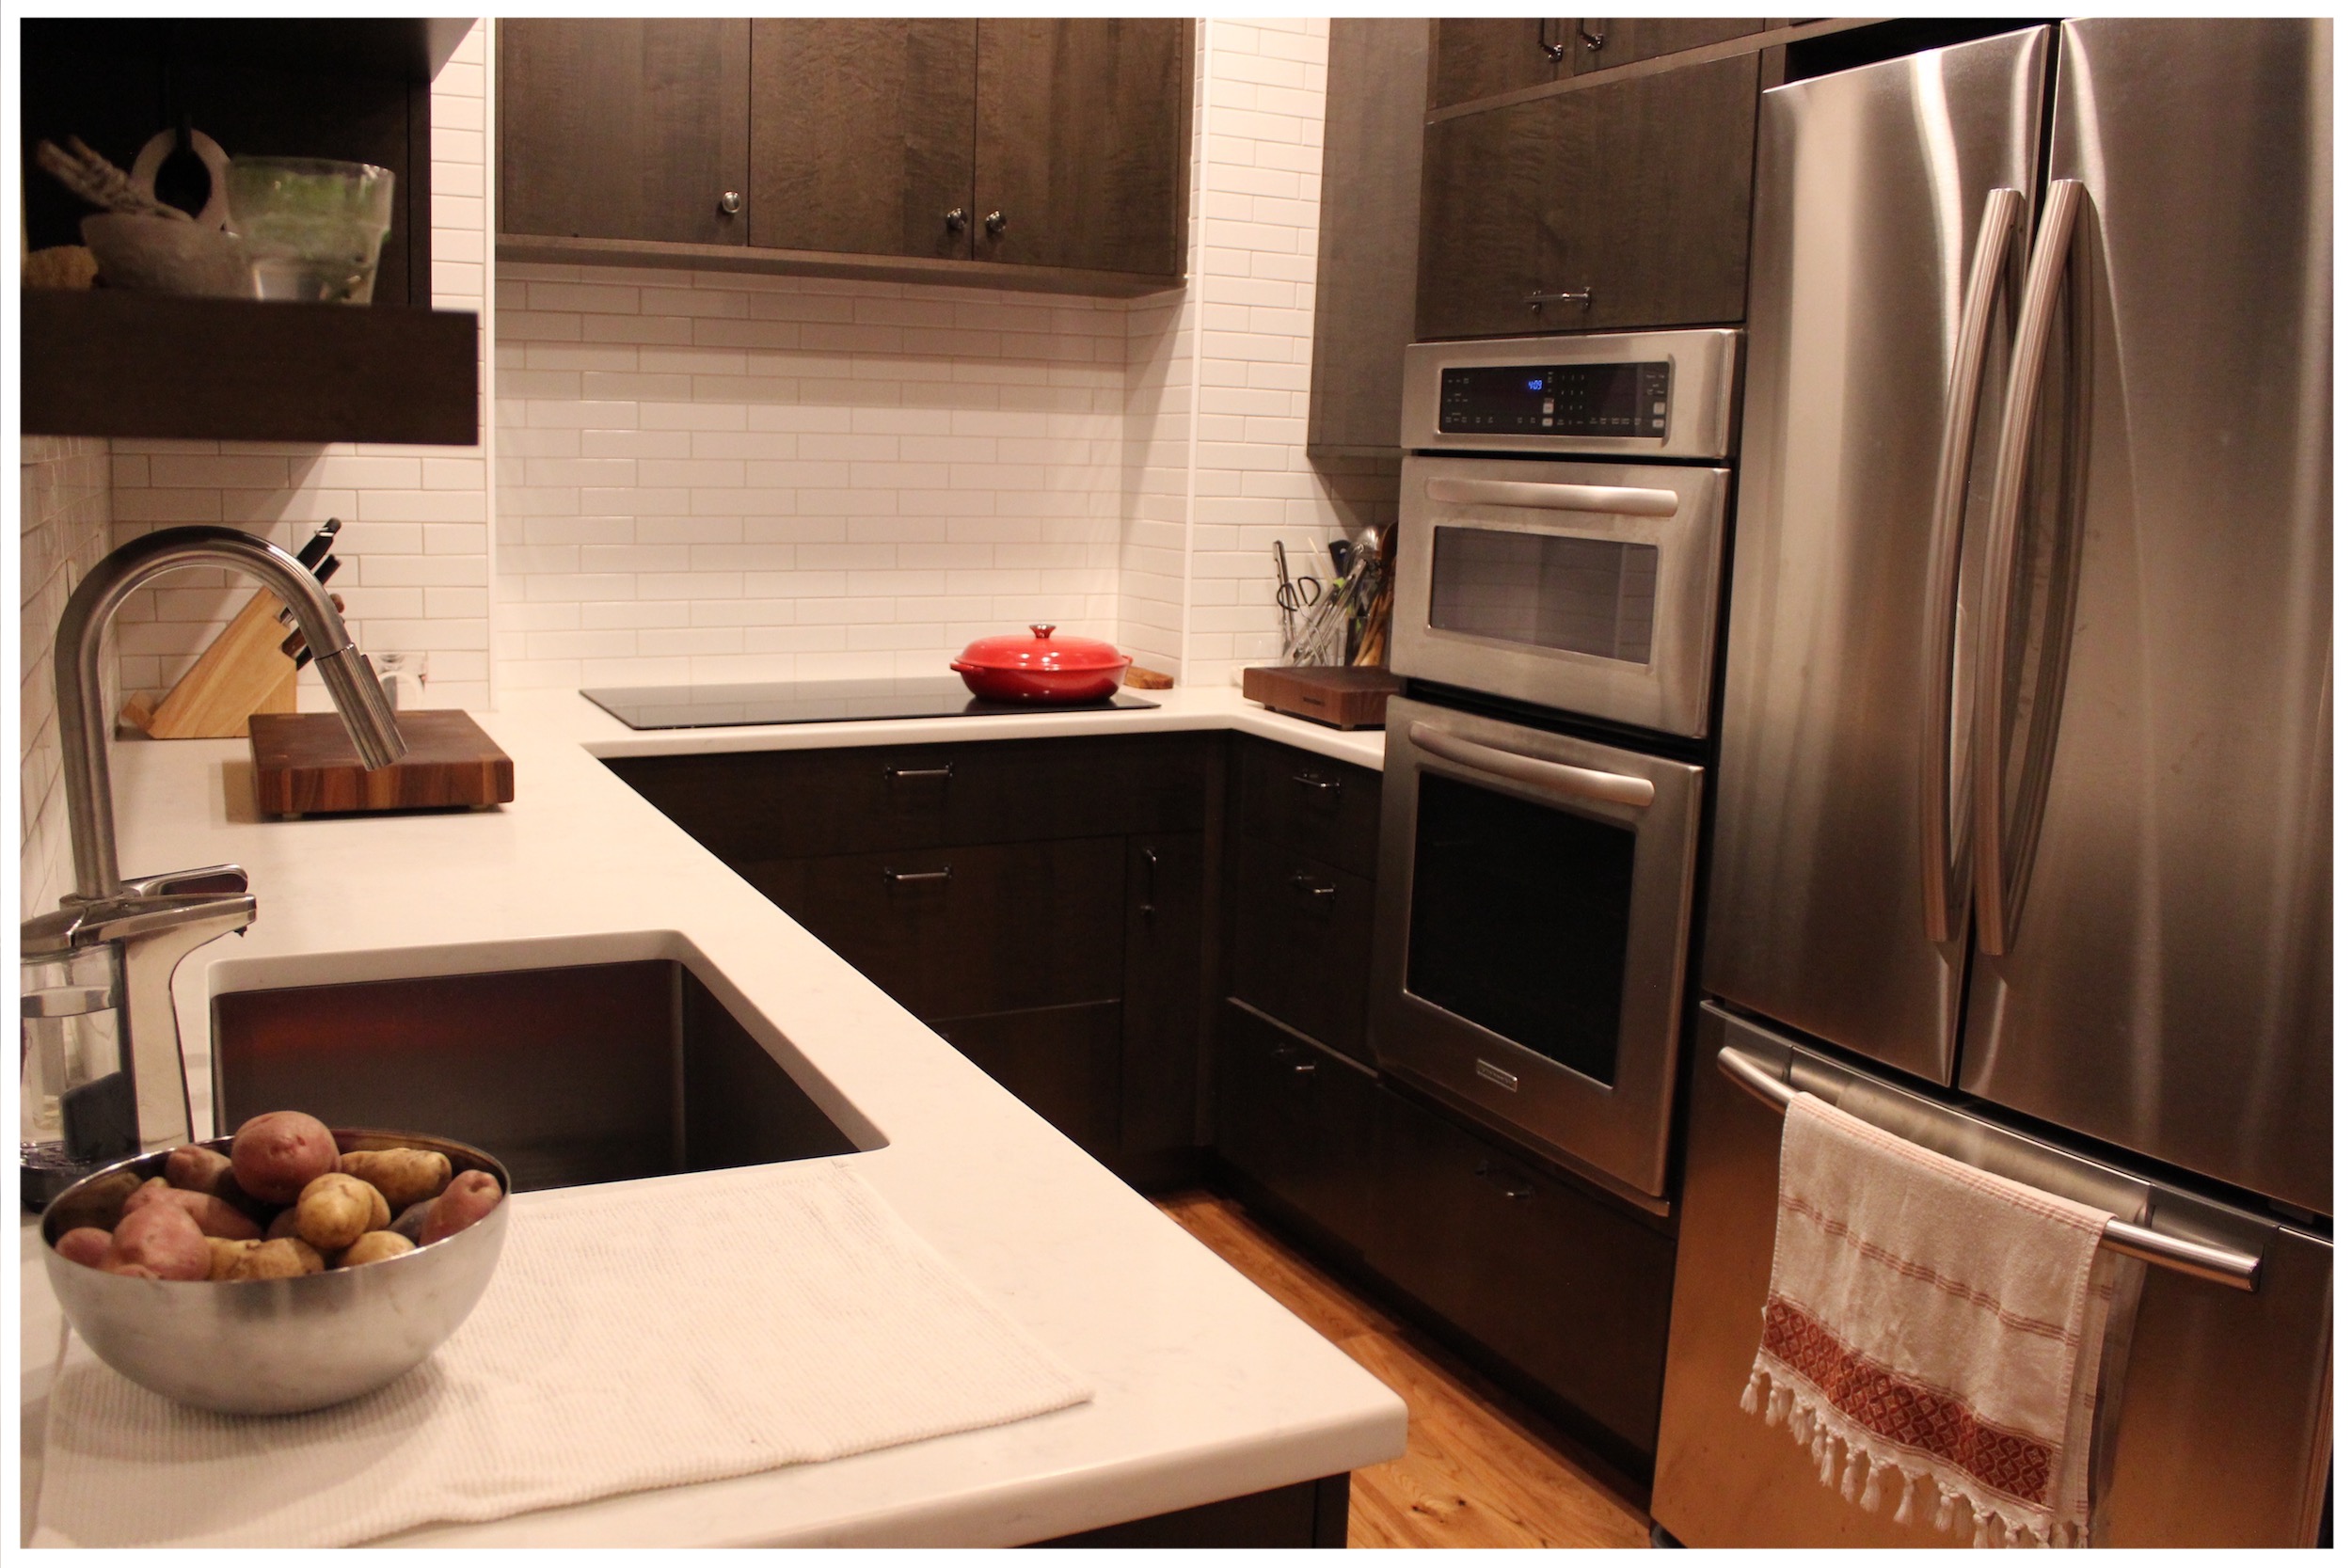 2_KitchenVisions-Modern-Kitchen-Boston.jpg